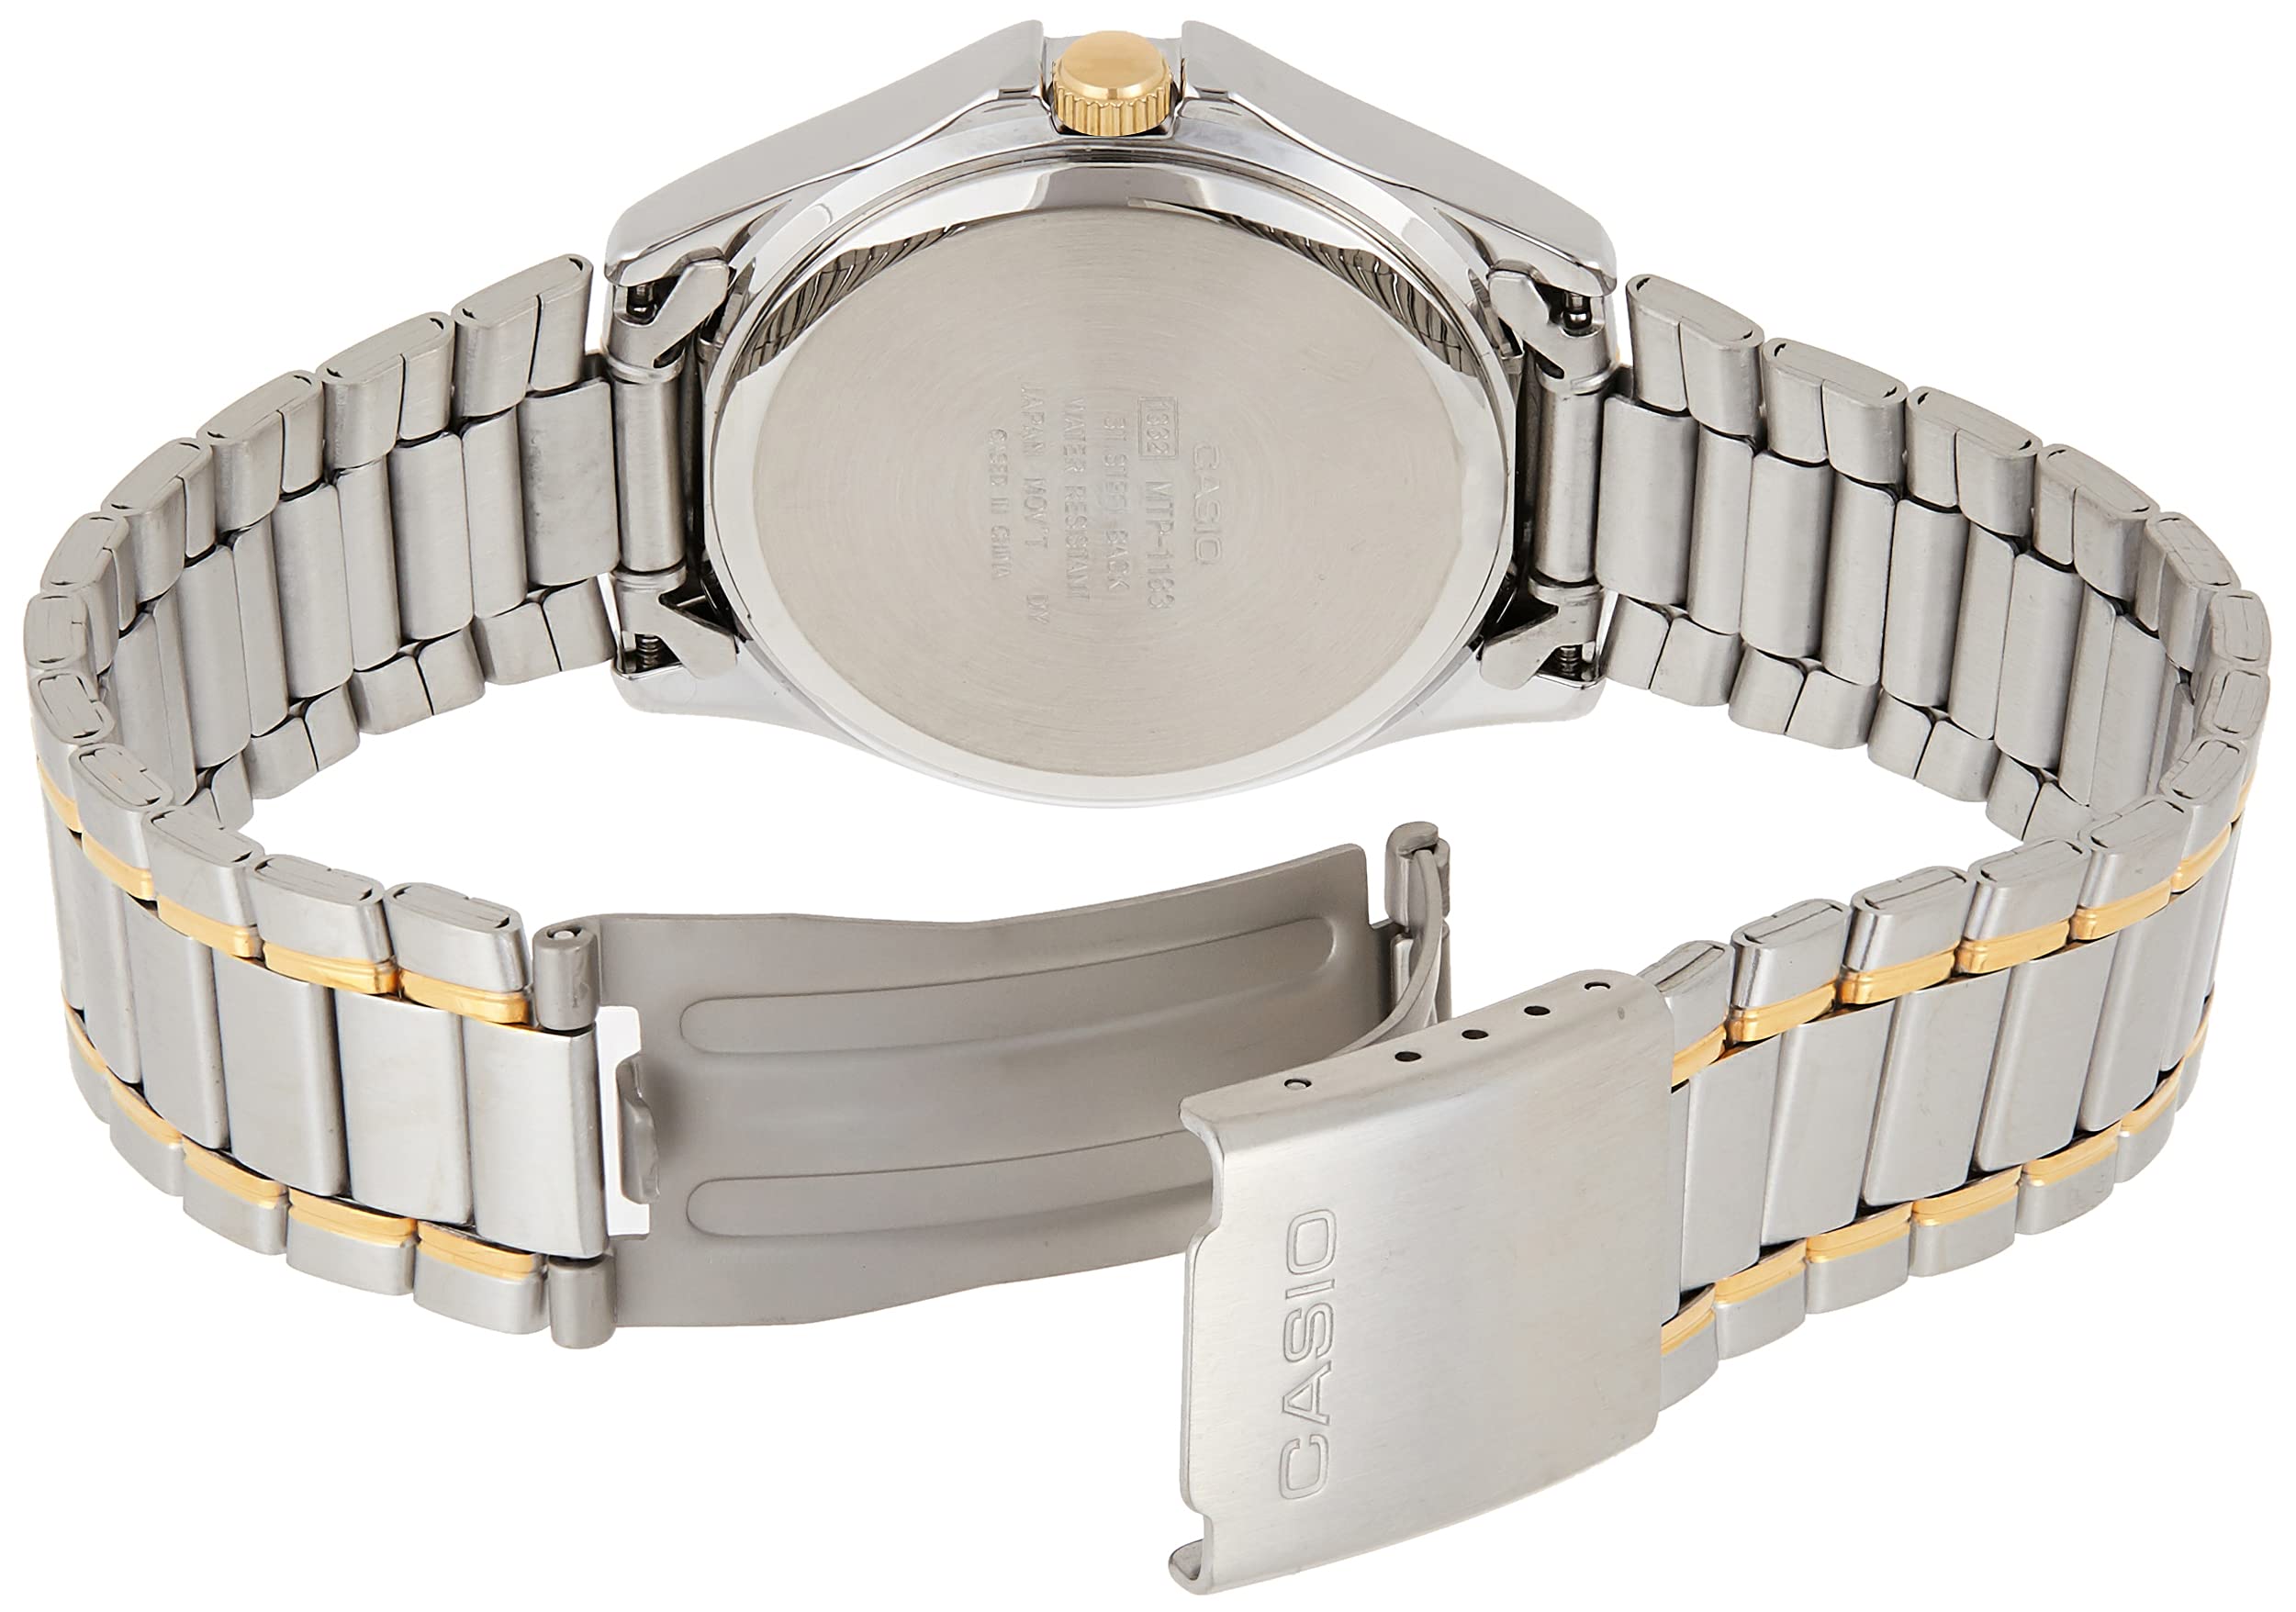 Casio General Men's Watches Metal Fashion MTP-1183G-7ADF - WW